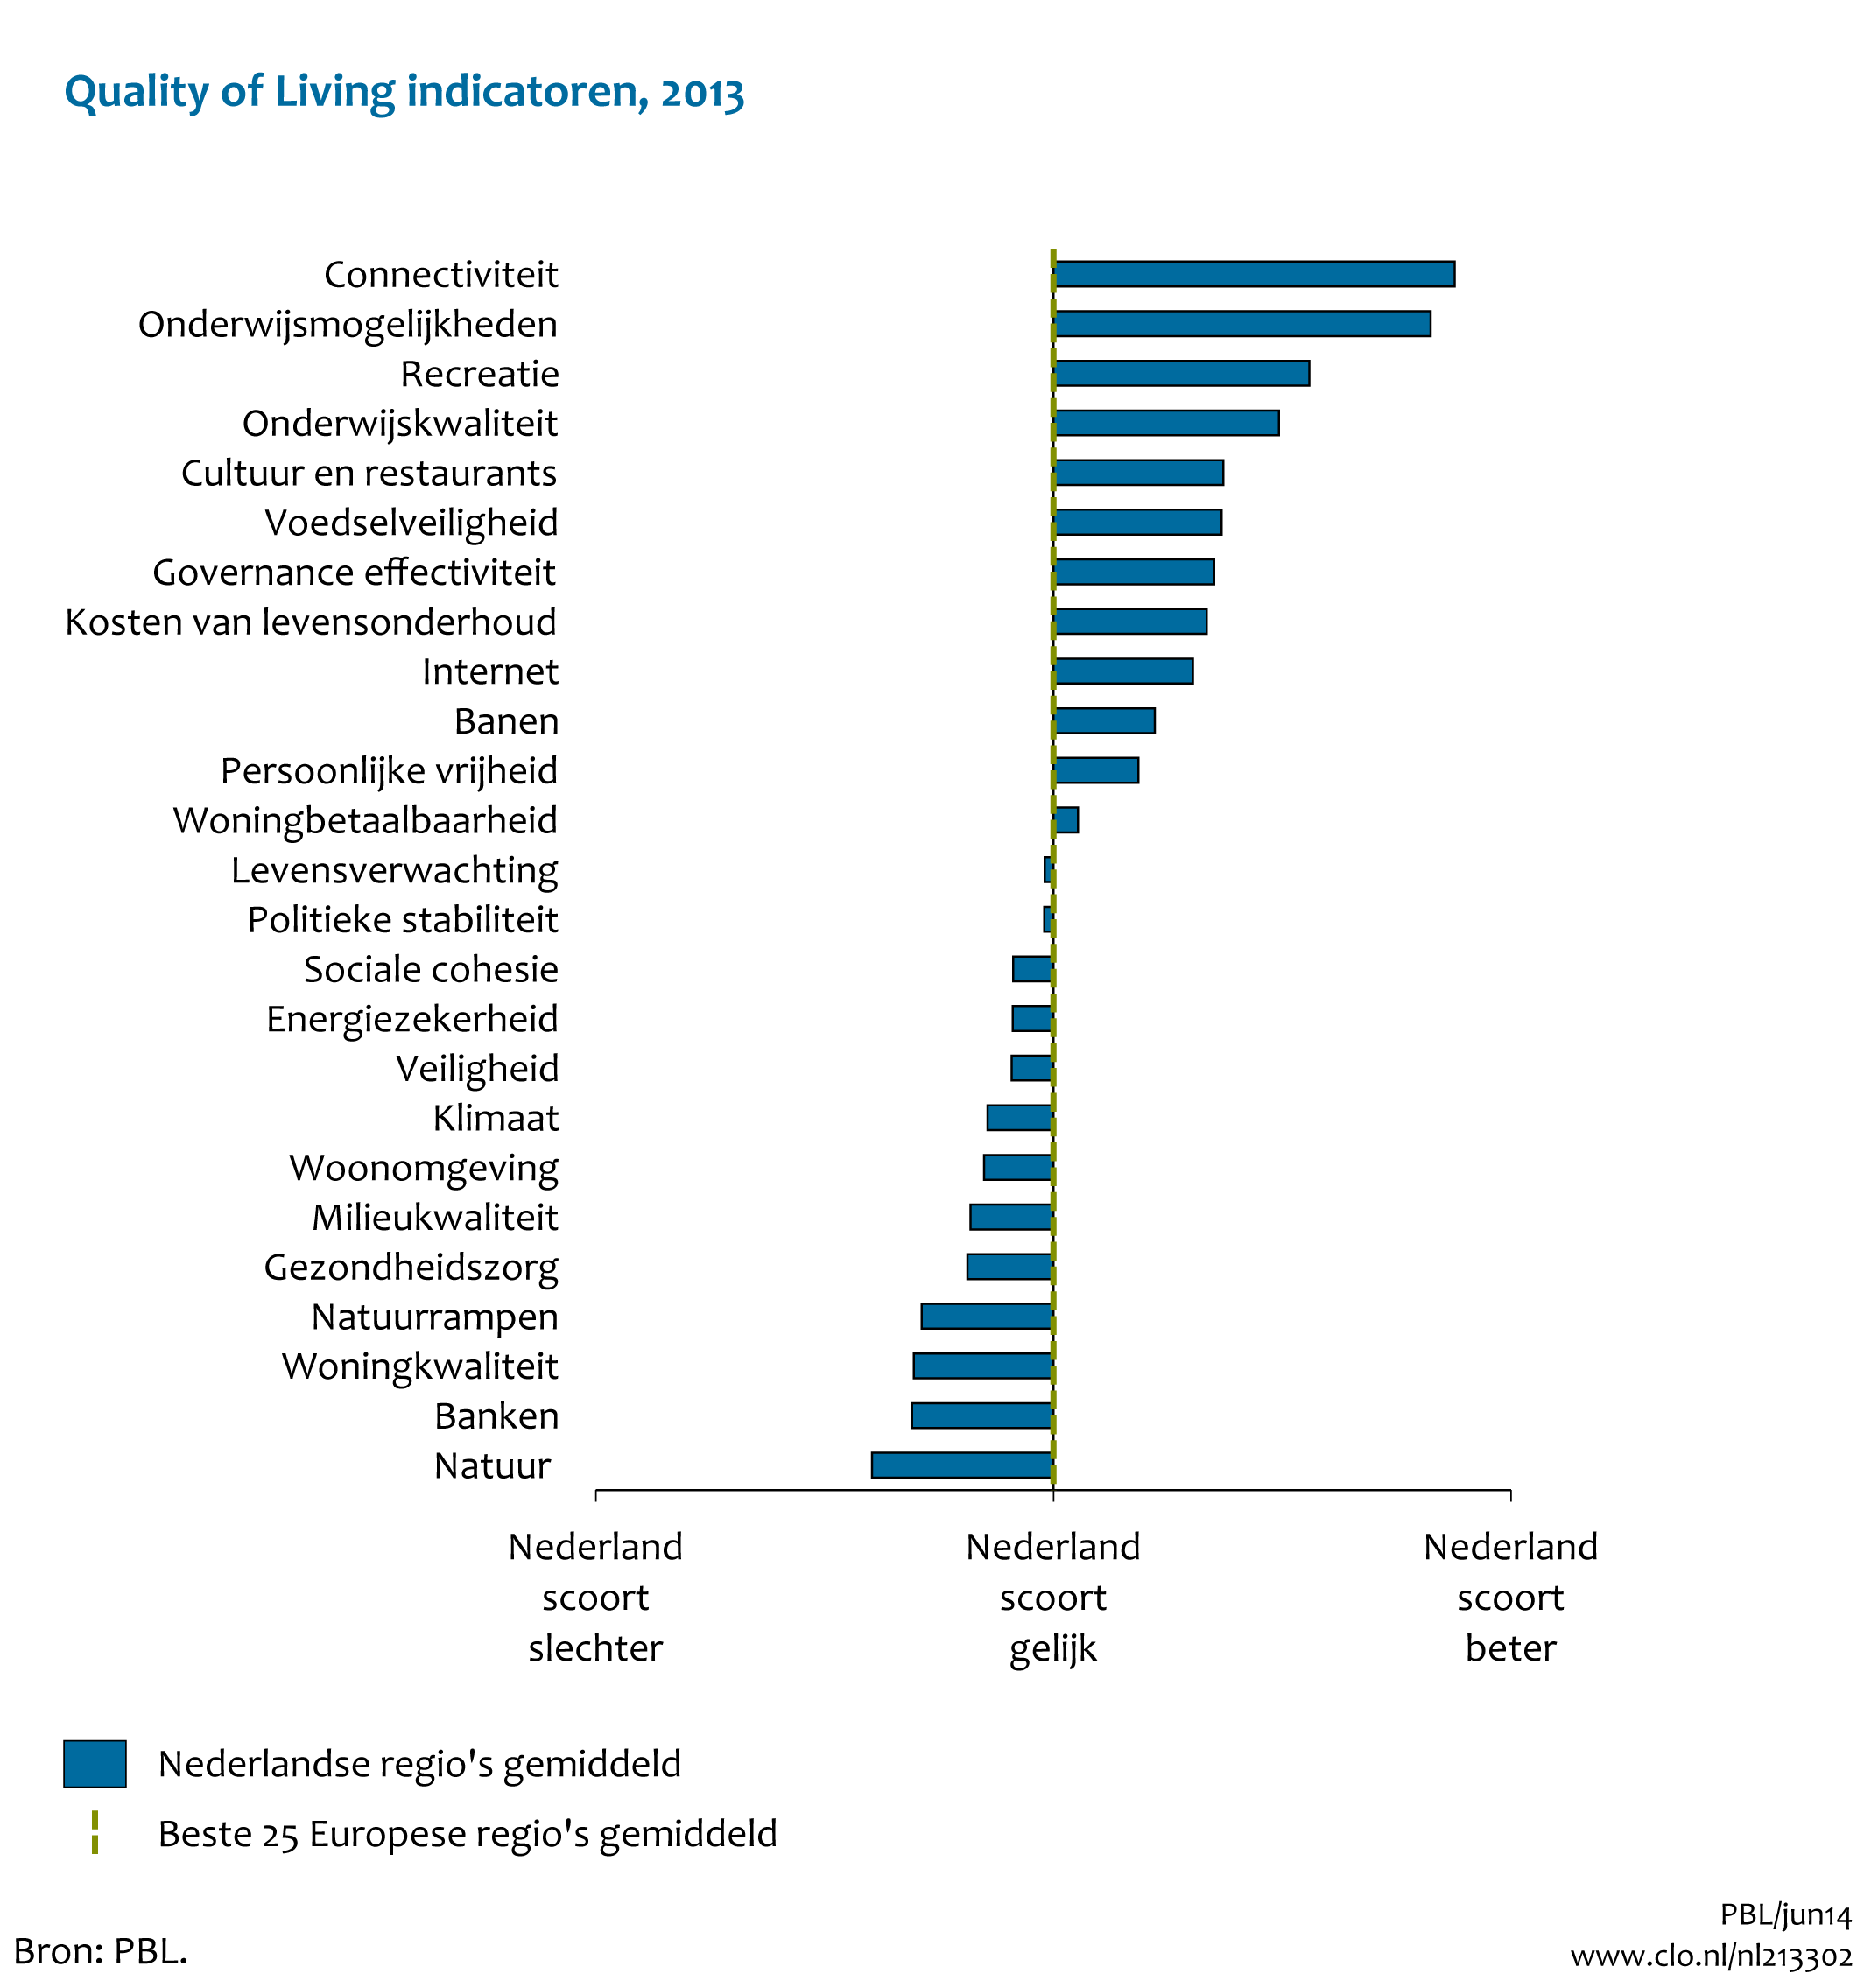 Figuur Quality of living indicatoren 2013. In de rest van de tekst wordt deze figuur uitgebreider uitgelegd.